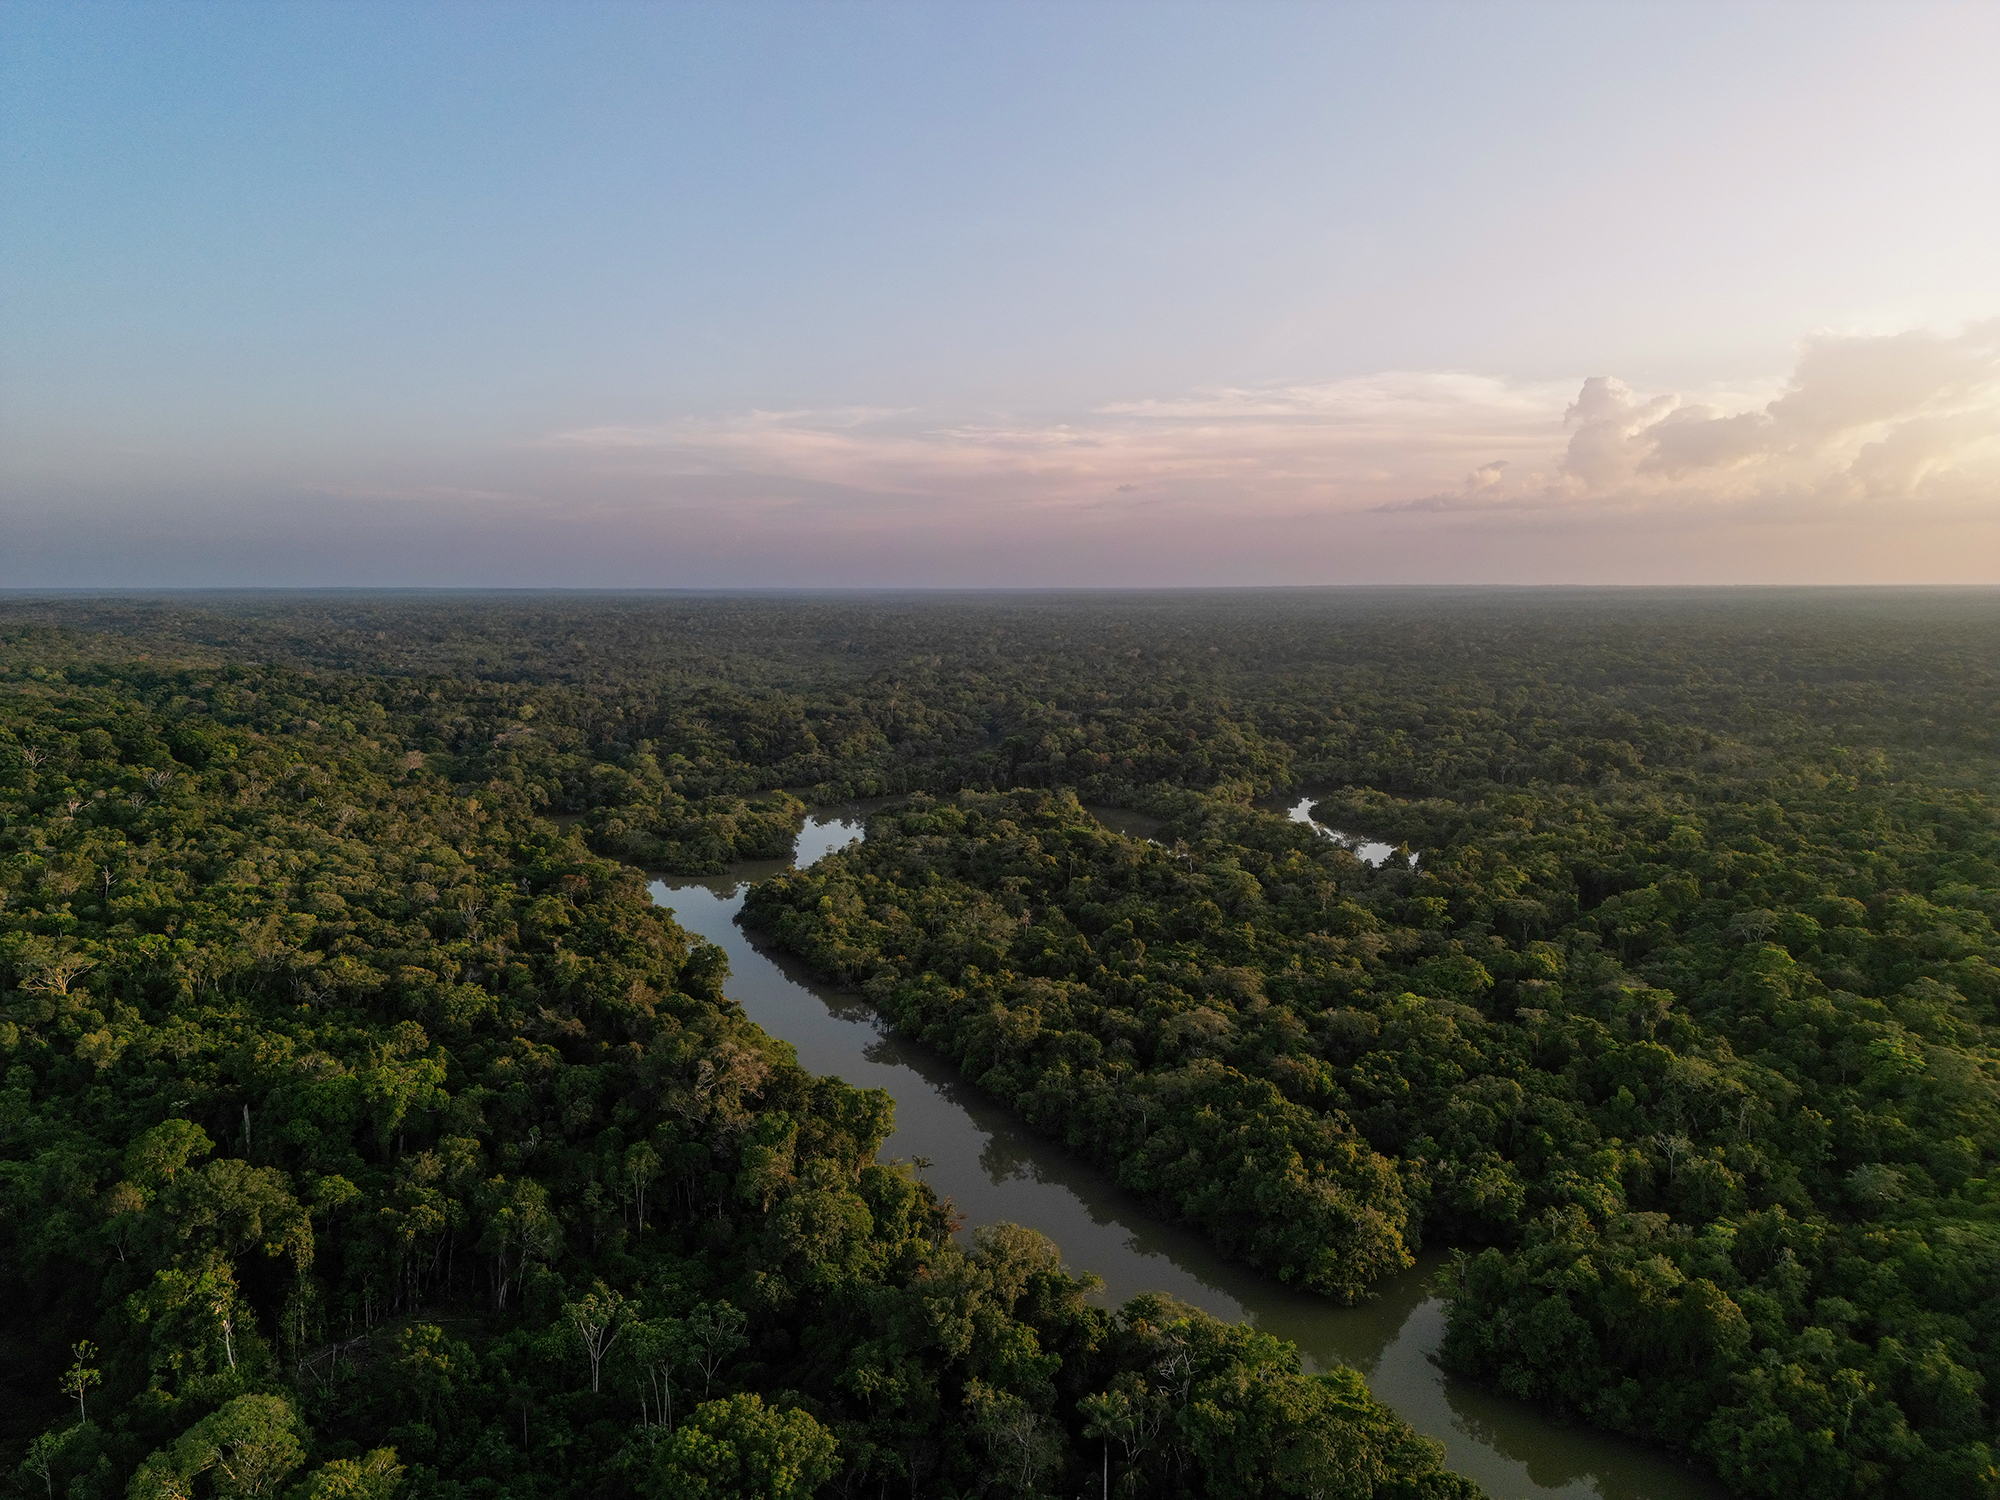 Vista aérea de los caños y vertientes del río Caquetá que componen la zona de conservación de Puerto Caimán. Resguardo Curare Los Ingleses en Amazonas, Colombia. Crédito: Victor Galeano.